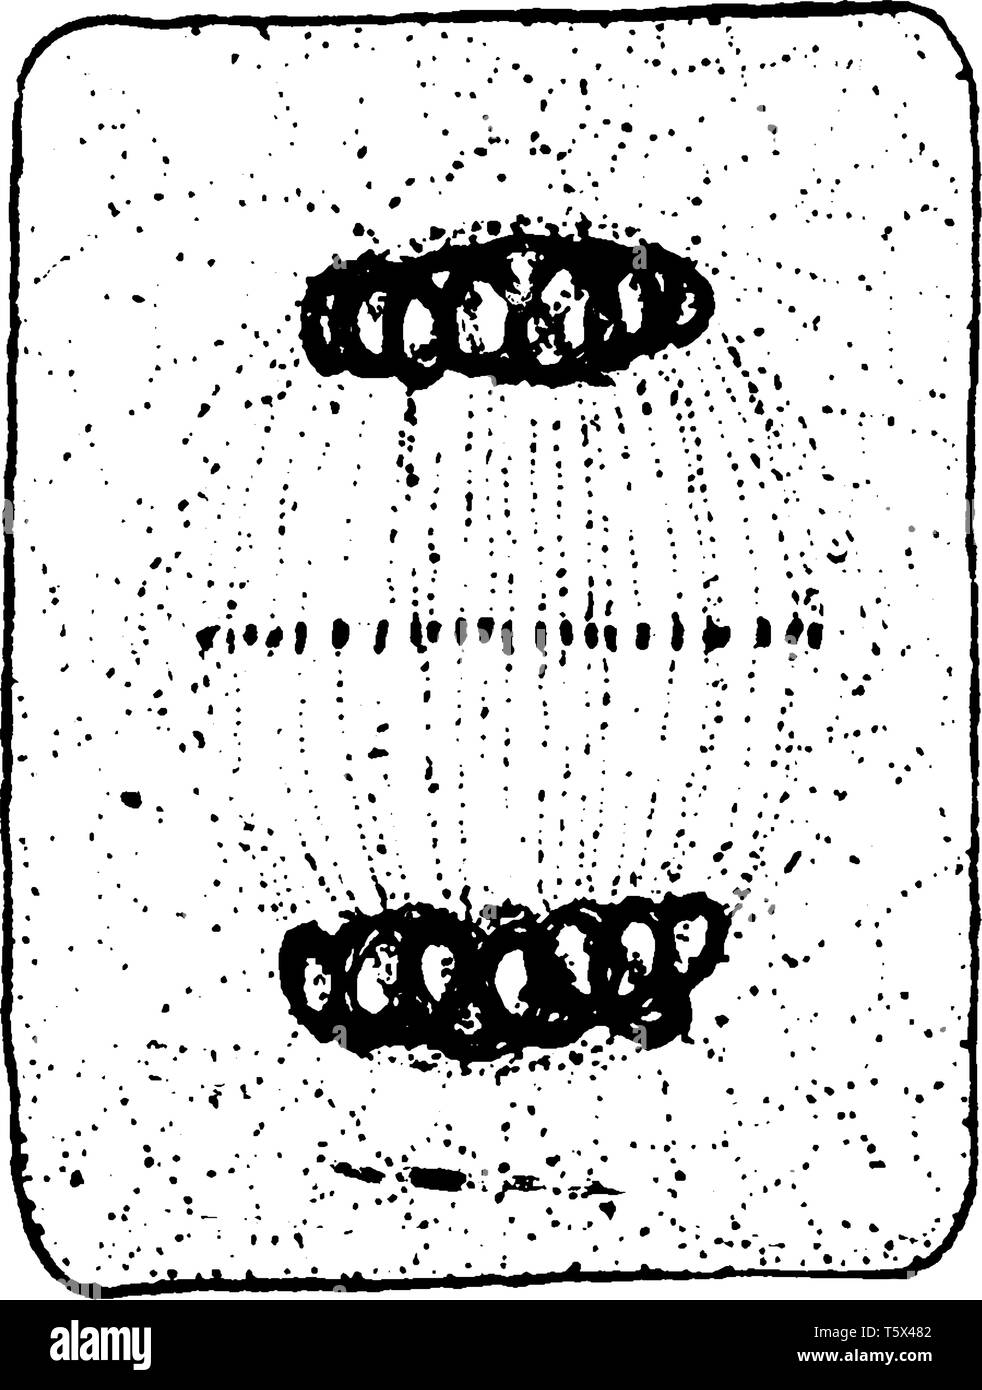 Chromosomen an Centro Löcher ein abgerundetes, zytoplasma in zwei Teile geteilt, vintage Strichzeichnung oder Gravur Abbildung. Stock Vektor